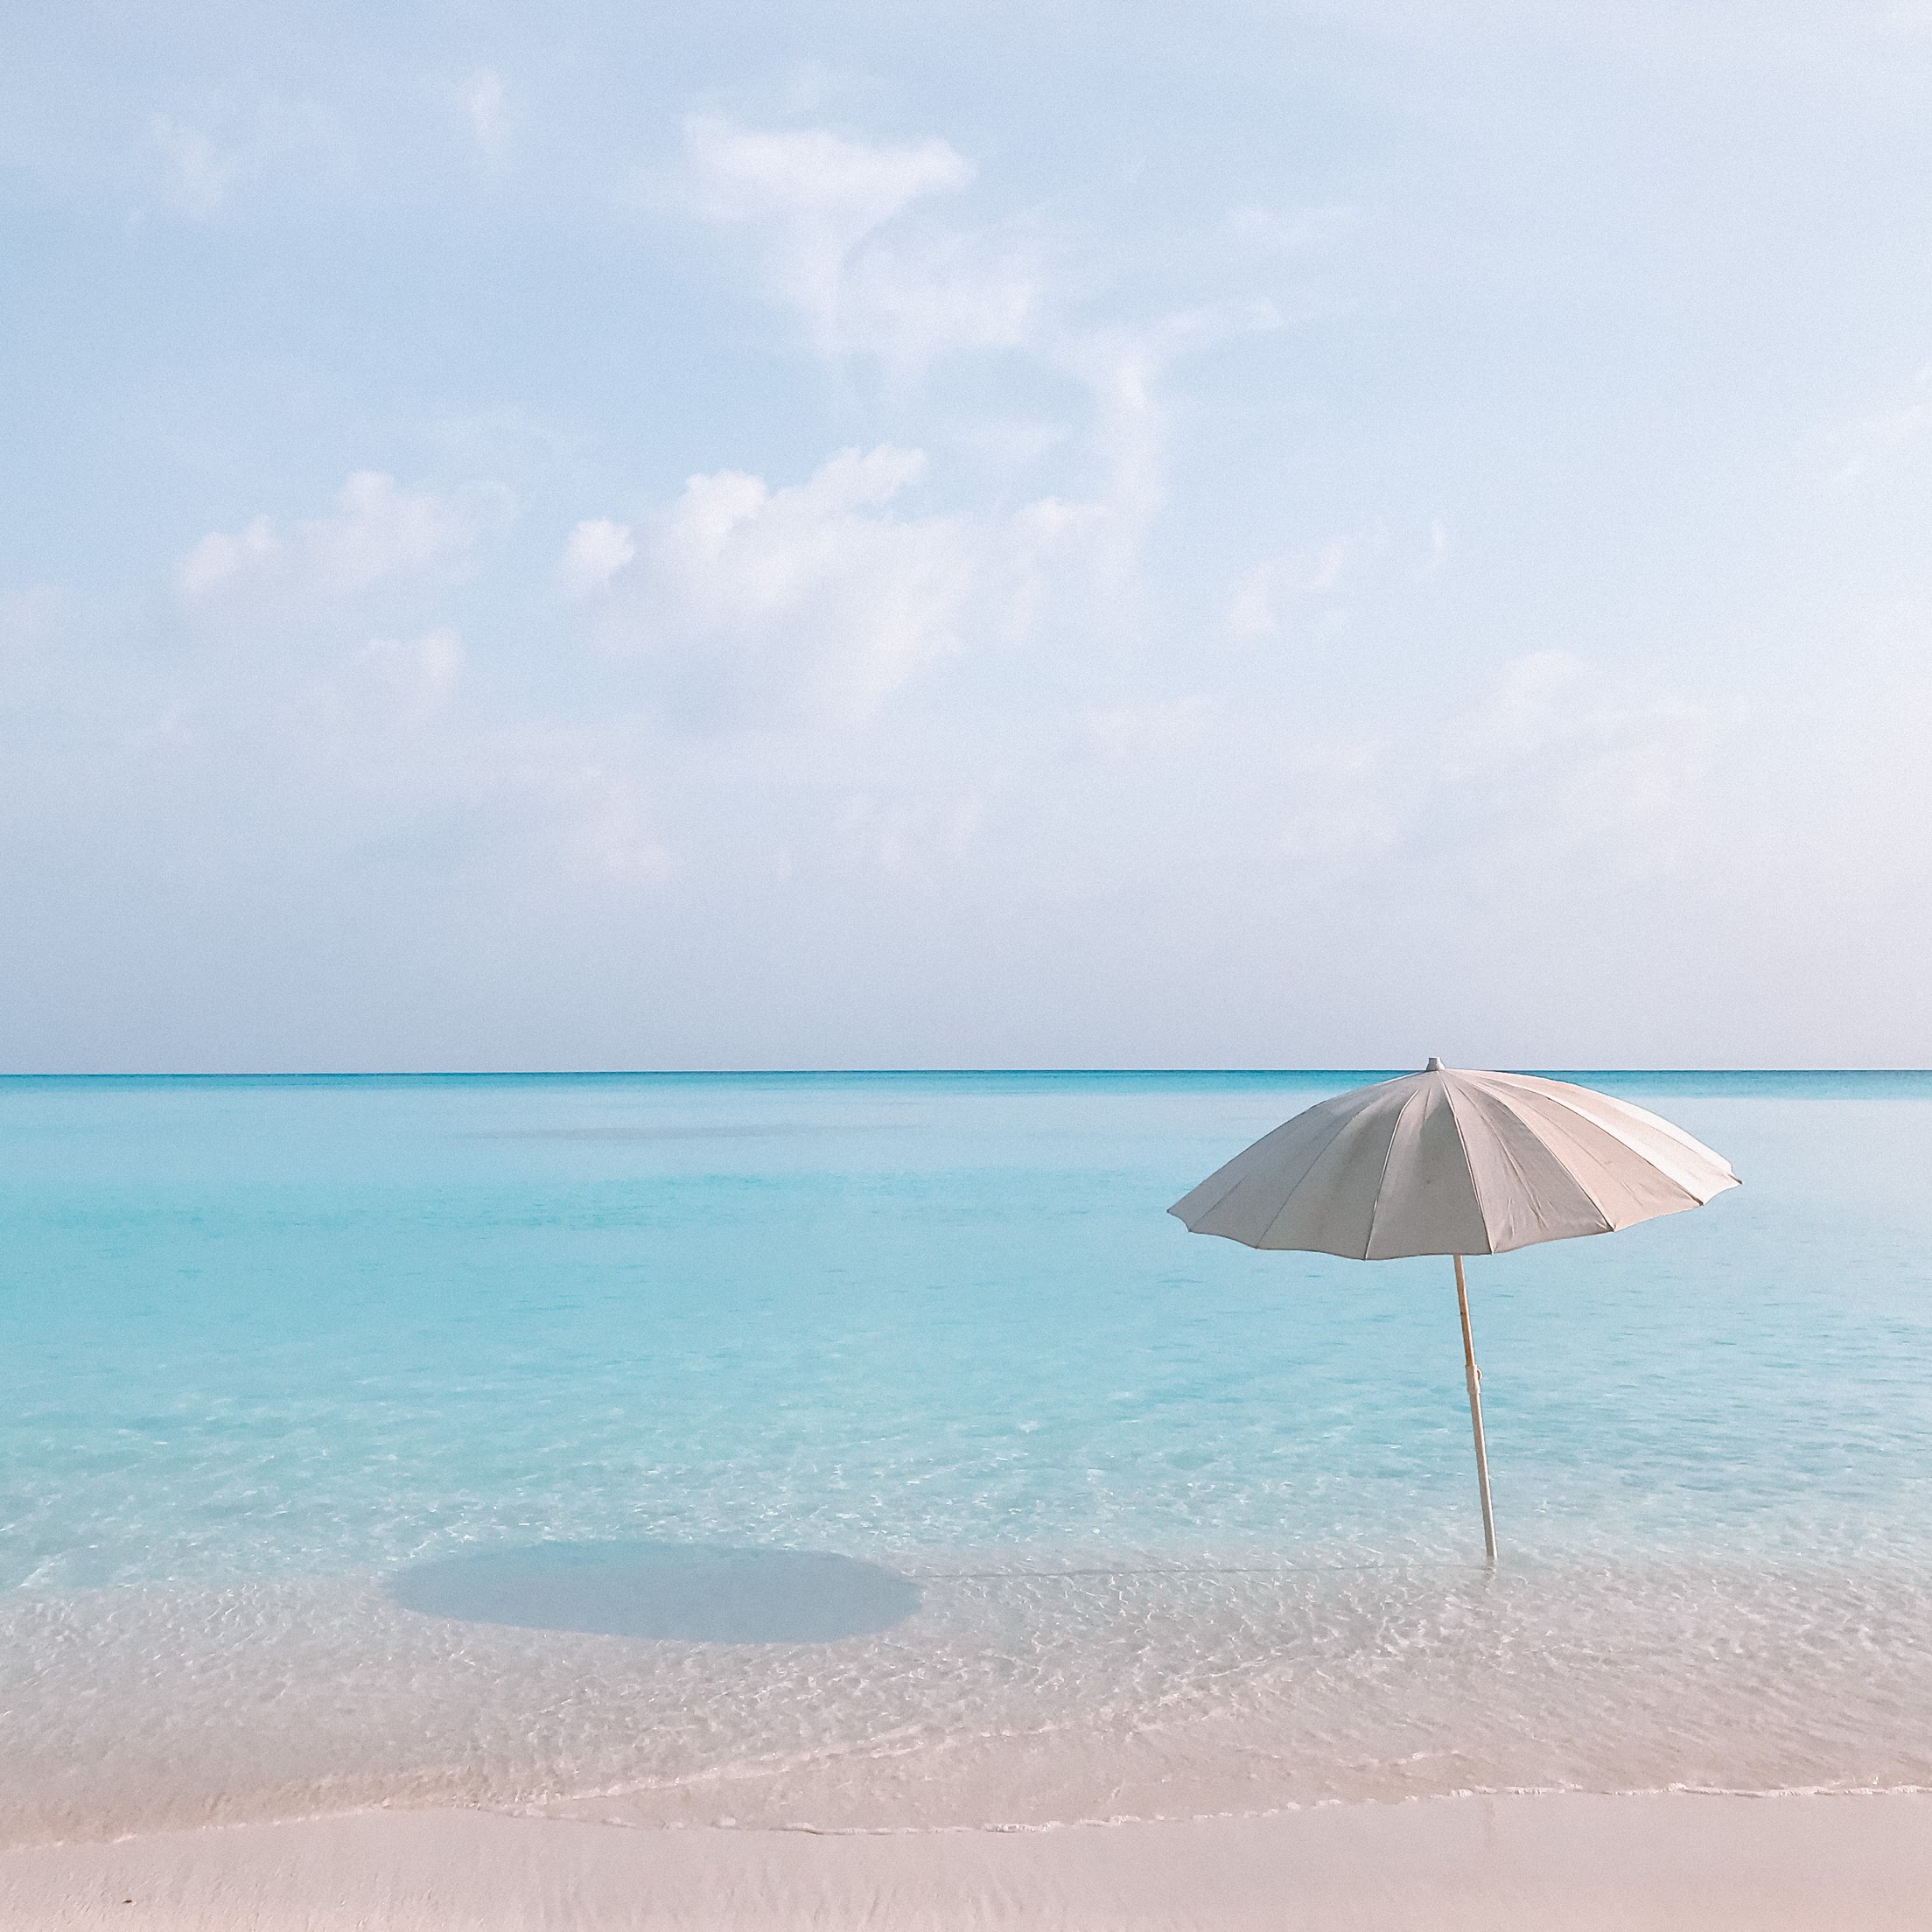 Fulhadhoo Bikini beach | Trip.com Maldives Travelogues